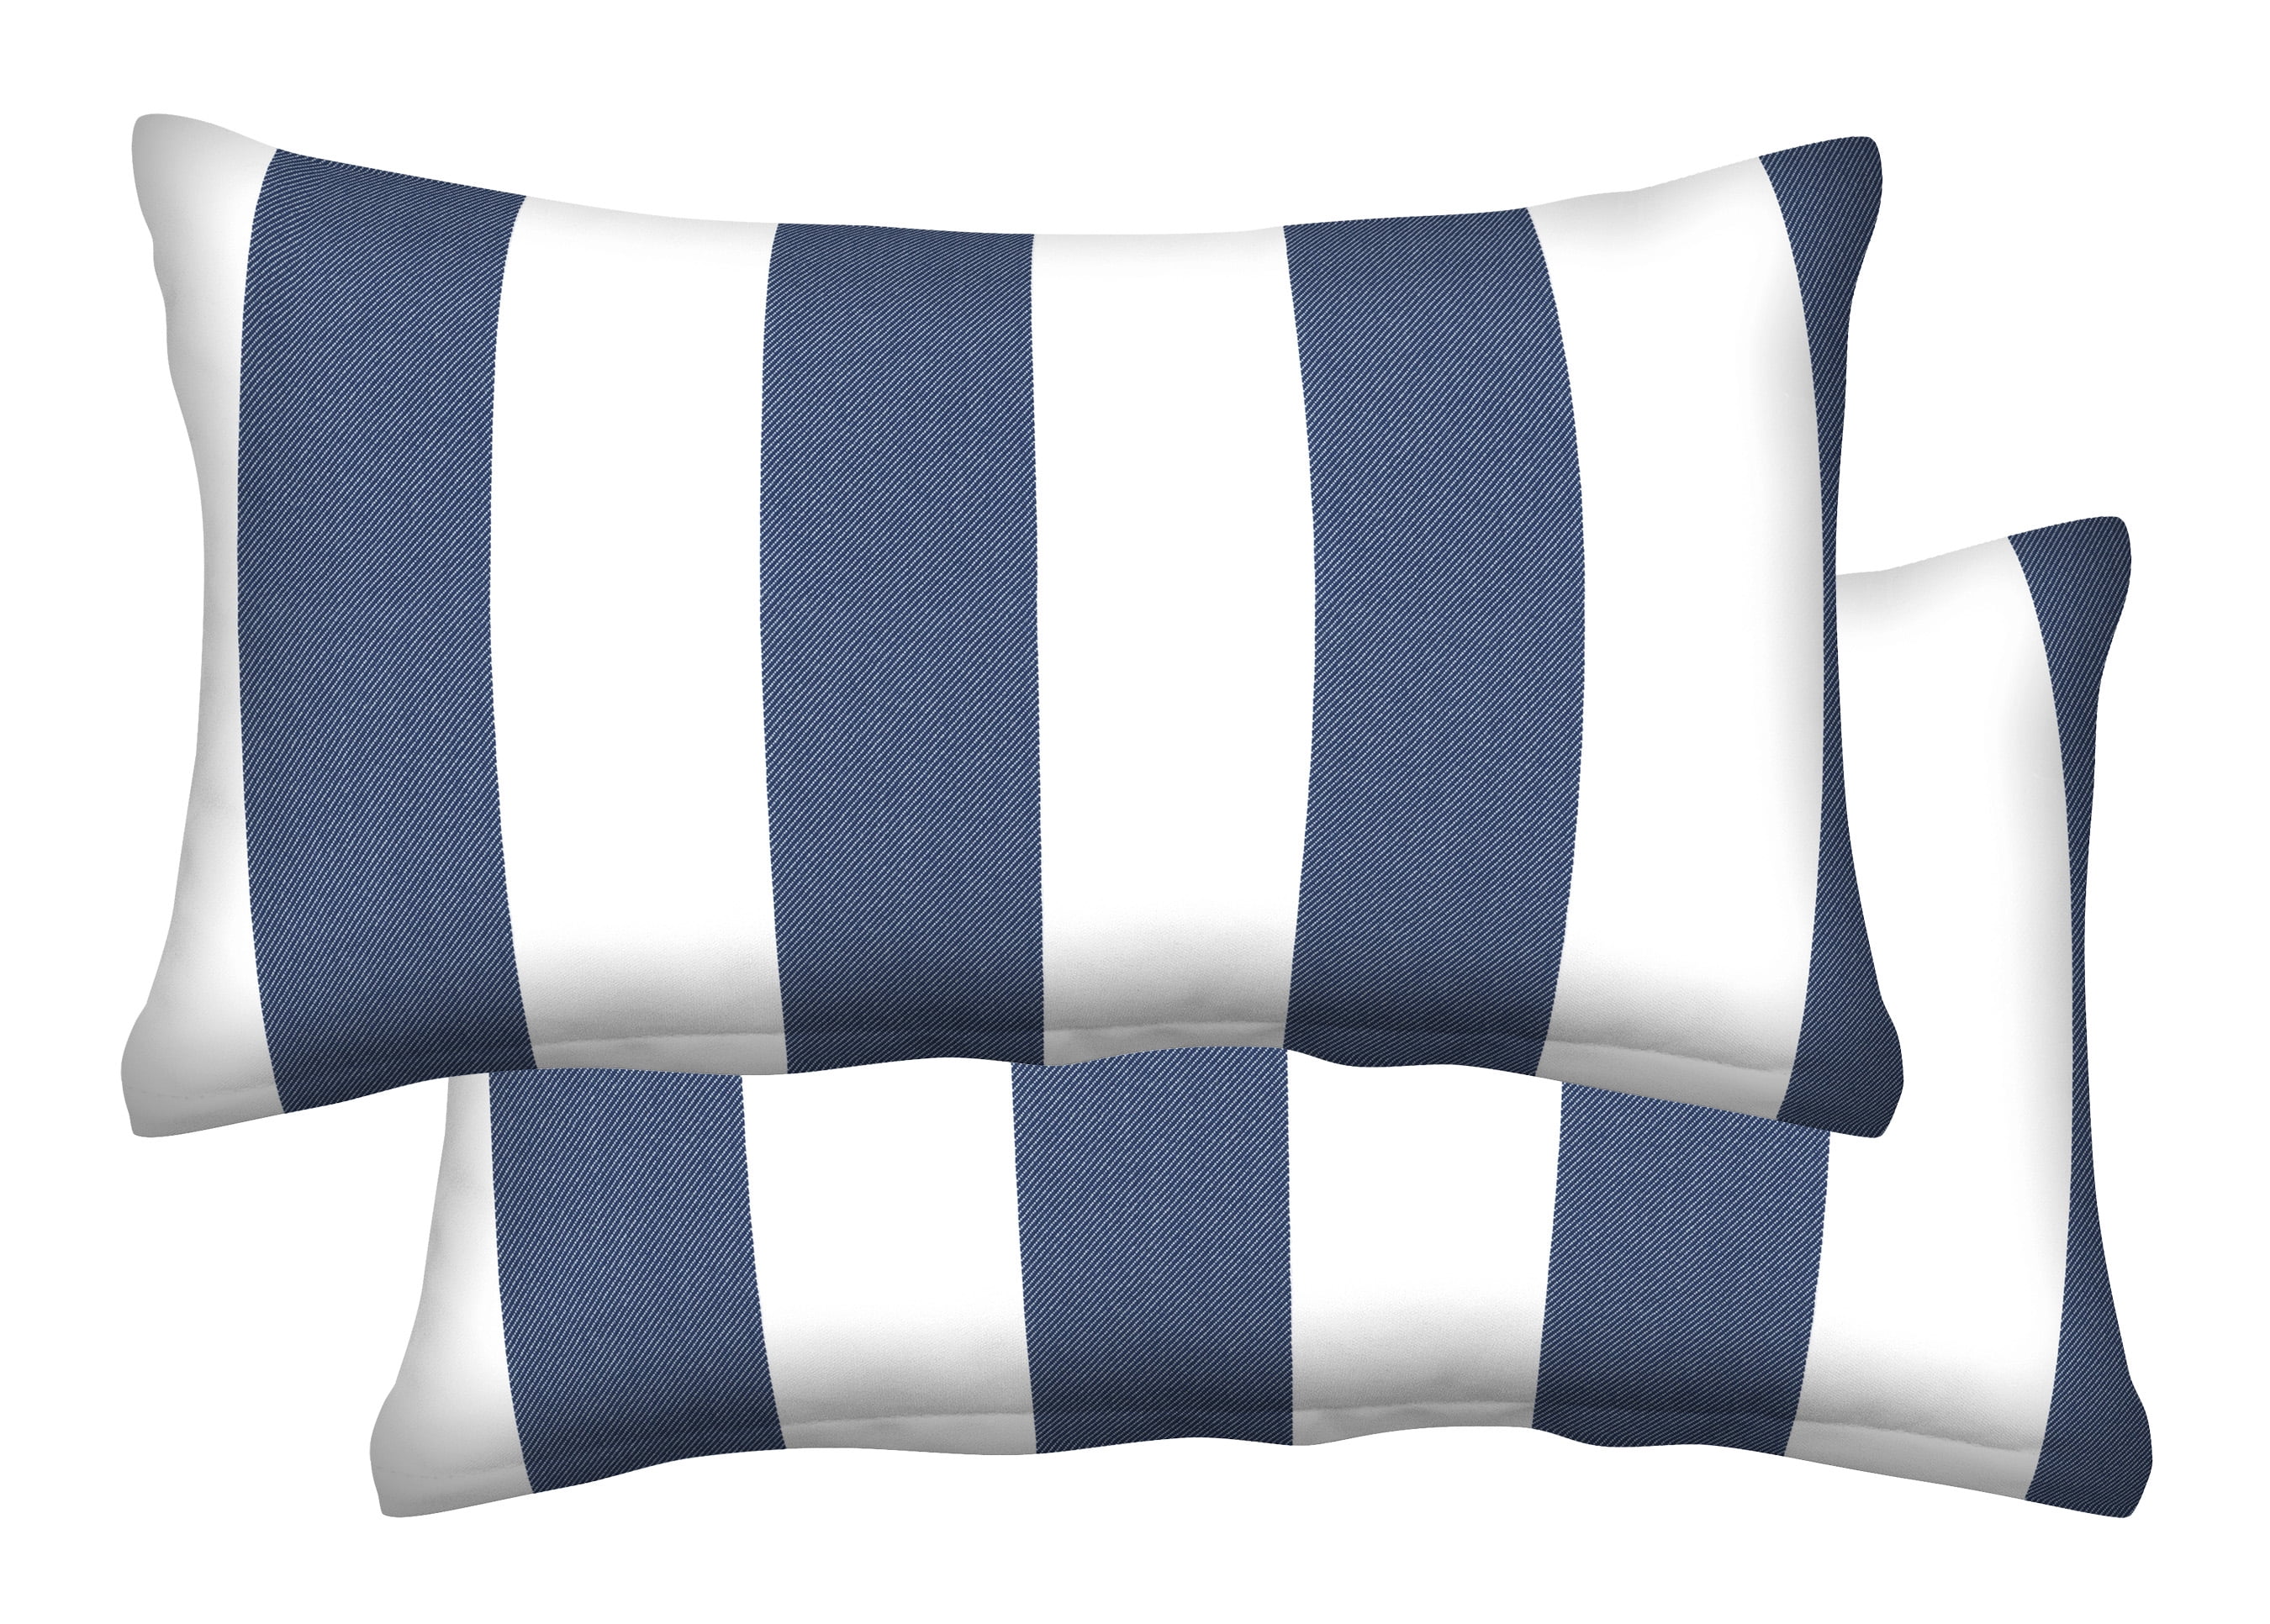 Navy Geometric Lumbar Pillow, Chair Cushion, Small Pillow, 50 X 30cm, 20 X  12 Inch, Linen Cushion, Made in Australia 